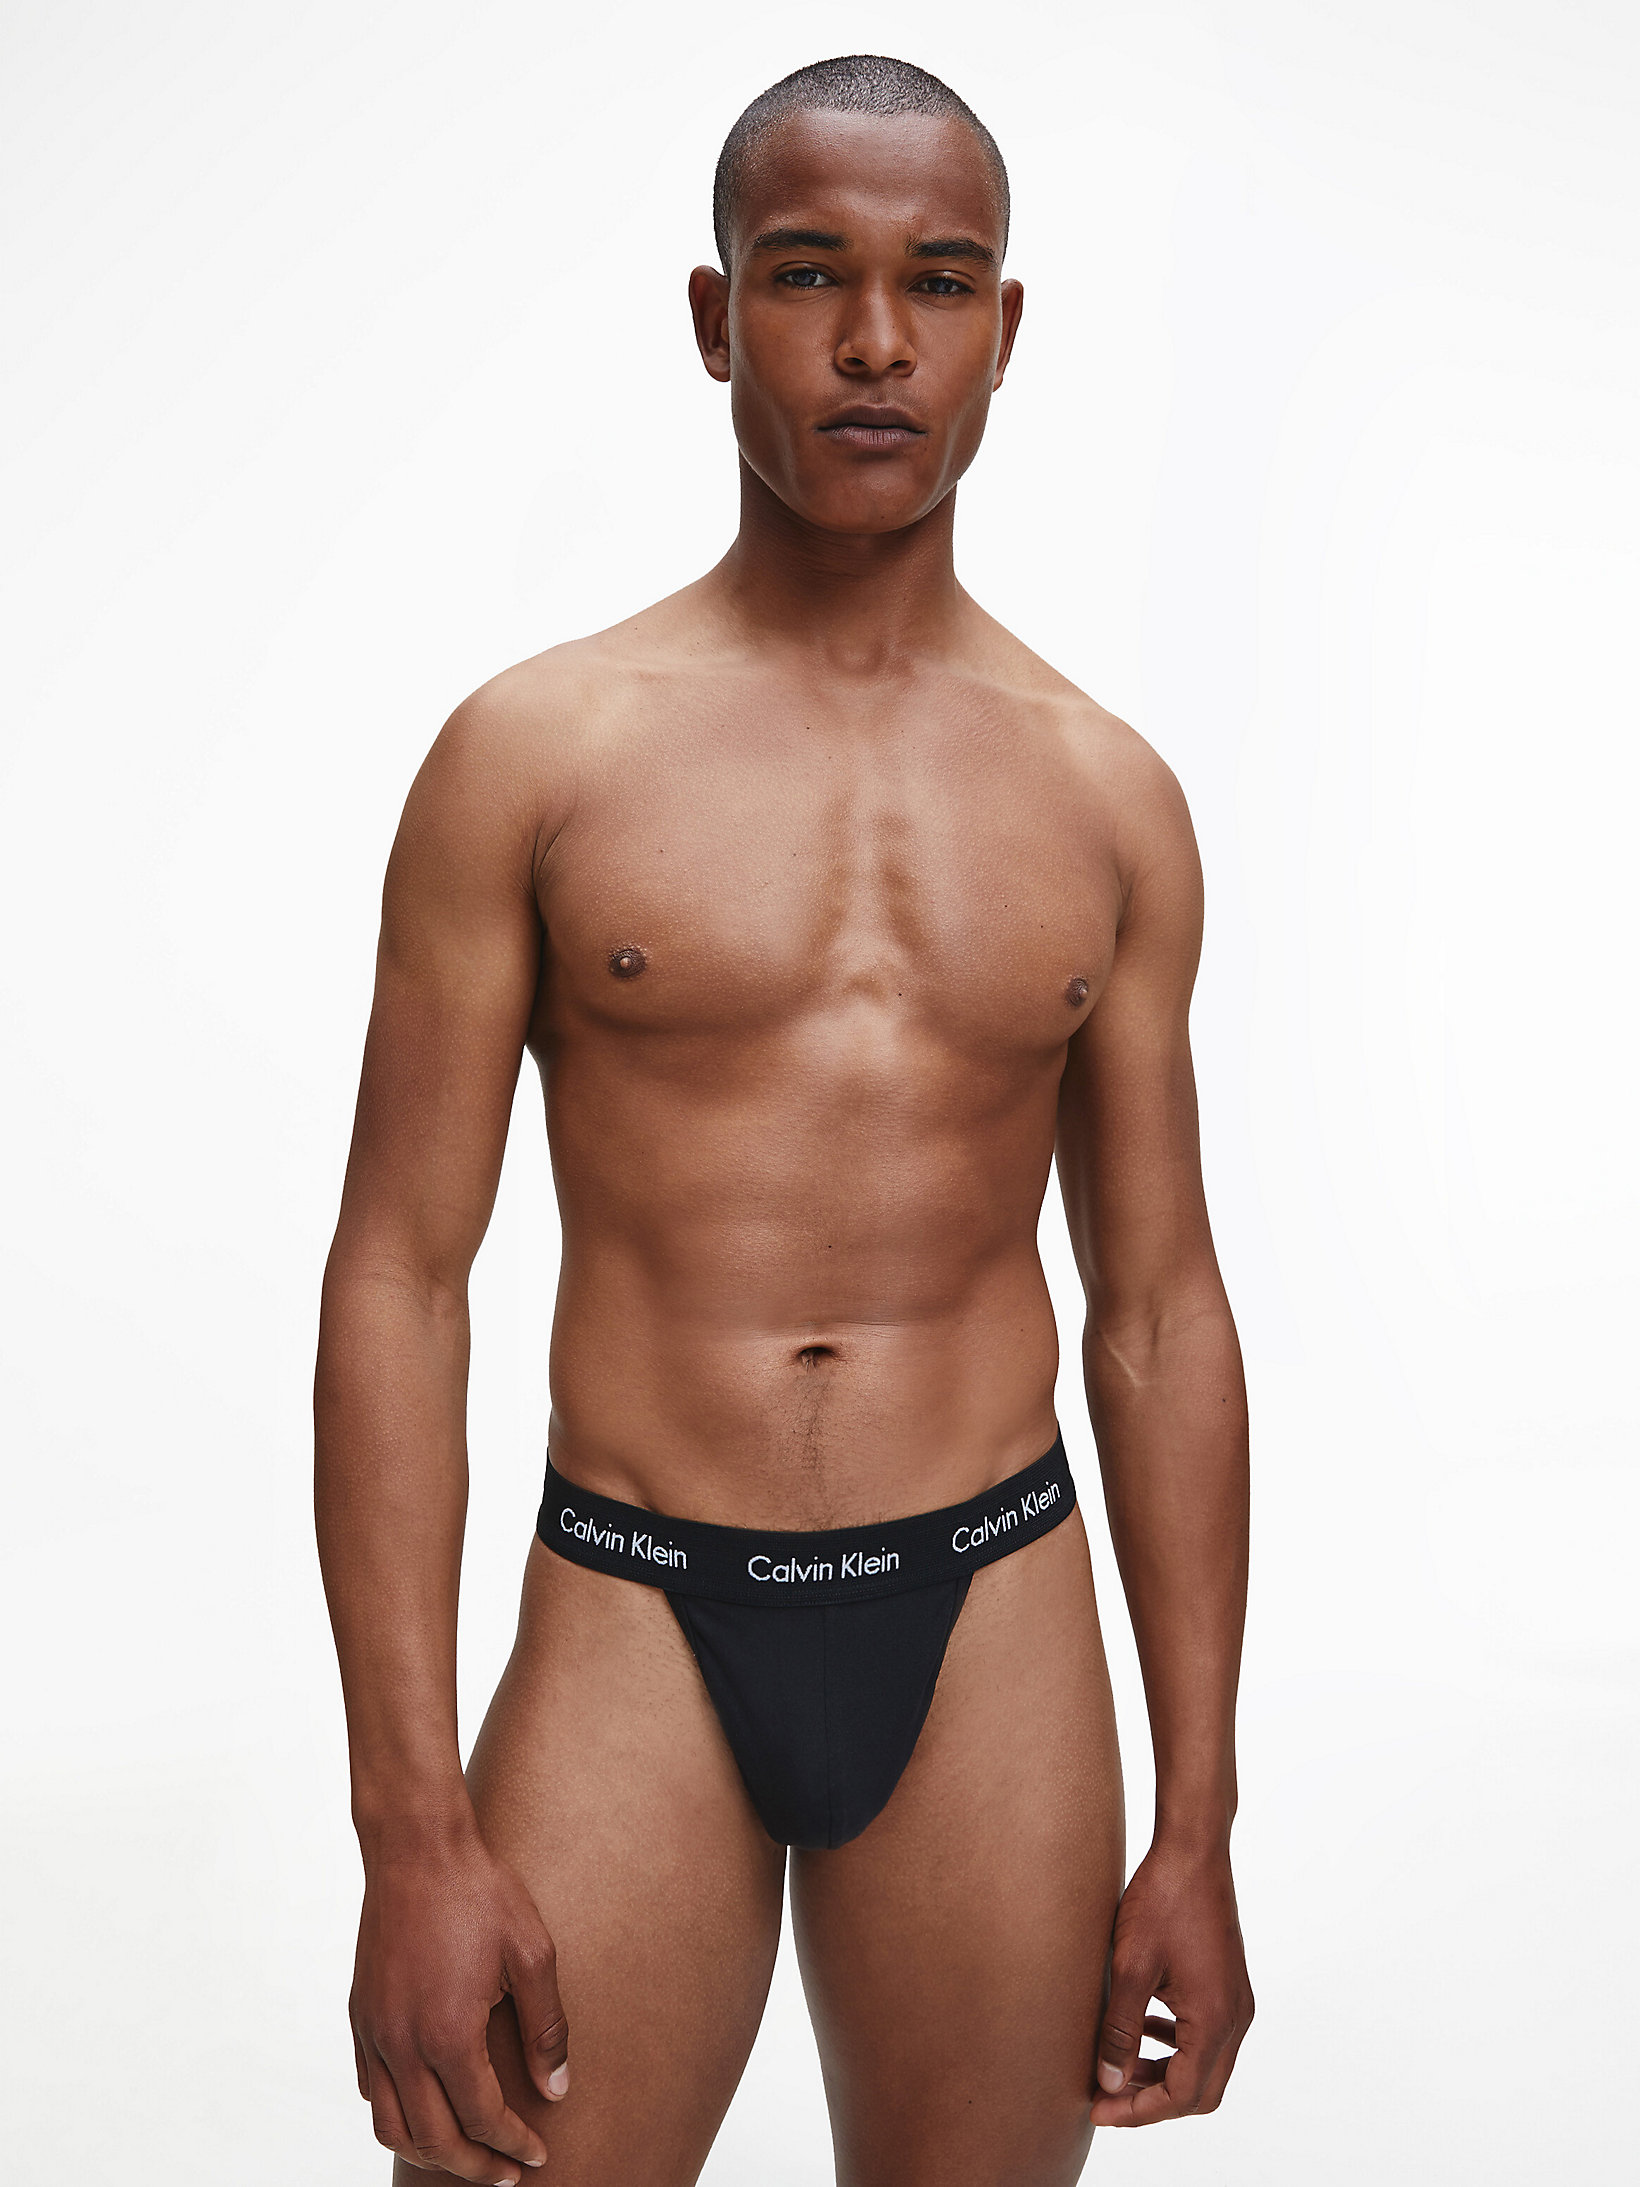 Mens Clothing Underwear Boxers briefs Calvin Klein 2 Pack Cotton Stretch Jock Straps for Men 